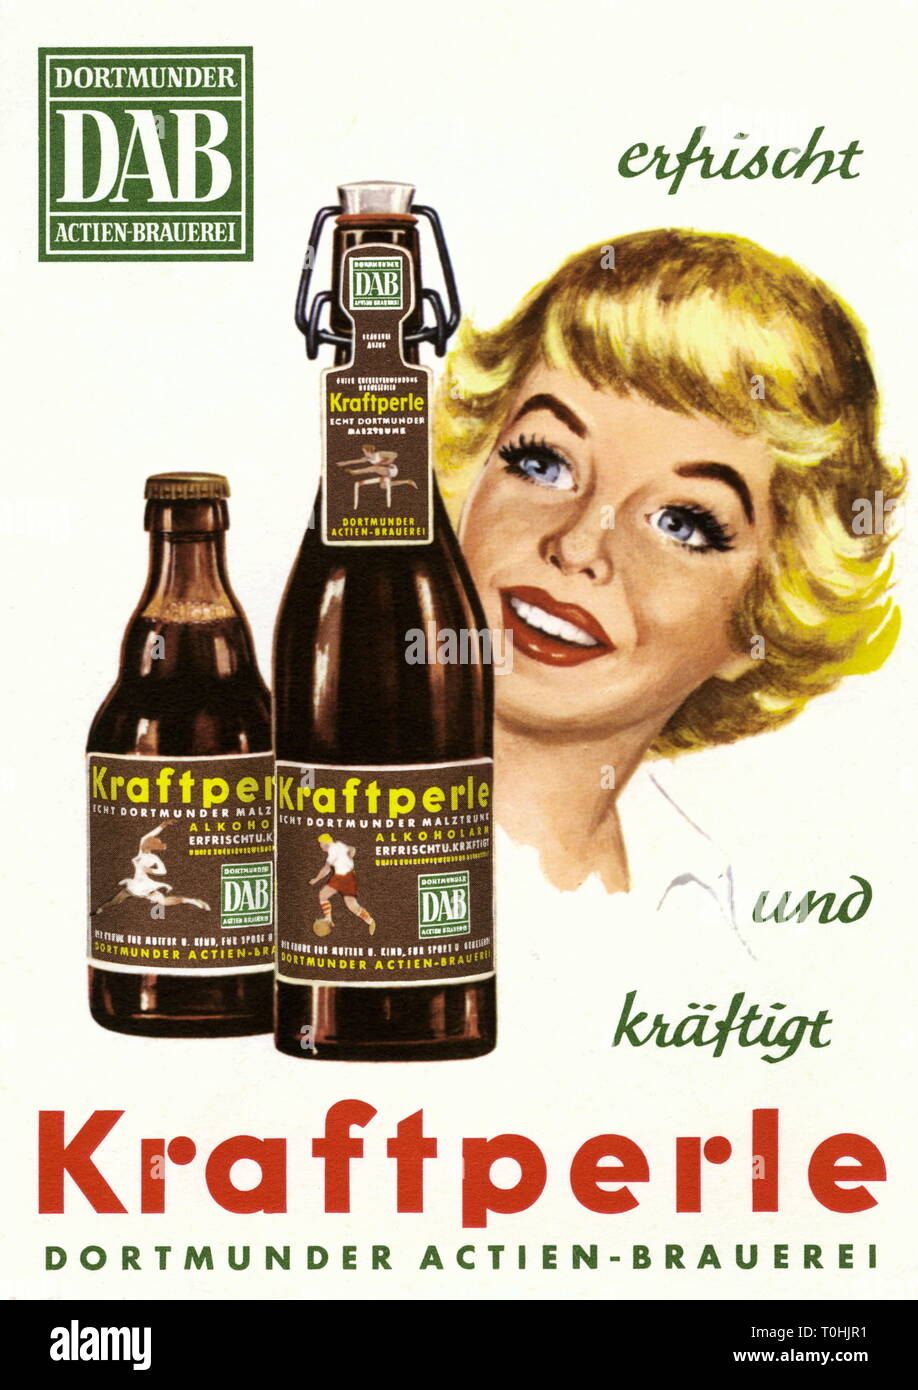 Pubblicità, bevande, birra birra di malto Kraftperle da DAB, Cartolina pubblicitaria della Dortmunder Actien Brauerei, Dortmund, Germania, circa 1958, Additional-Rights-Clearance-Info-Not-Available Foto Stock